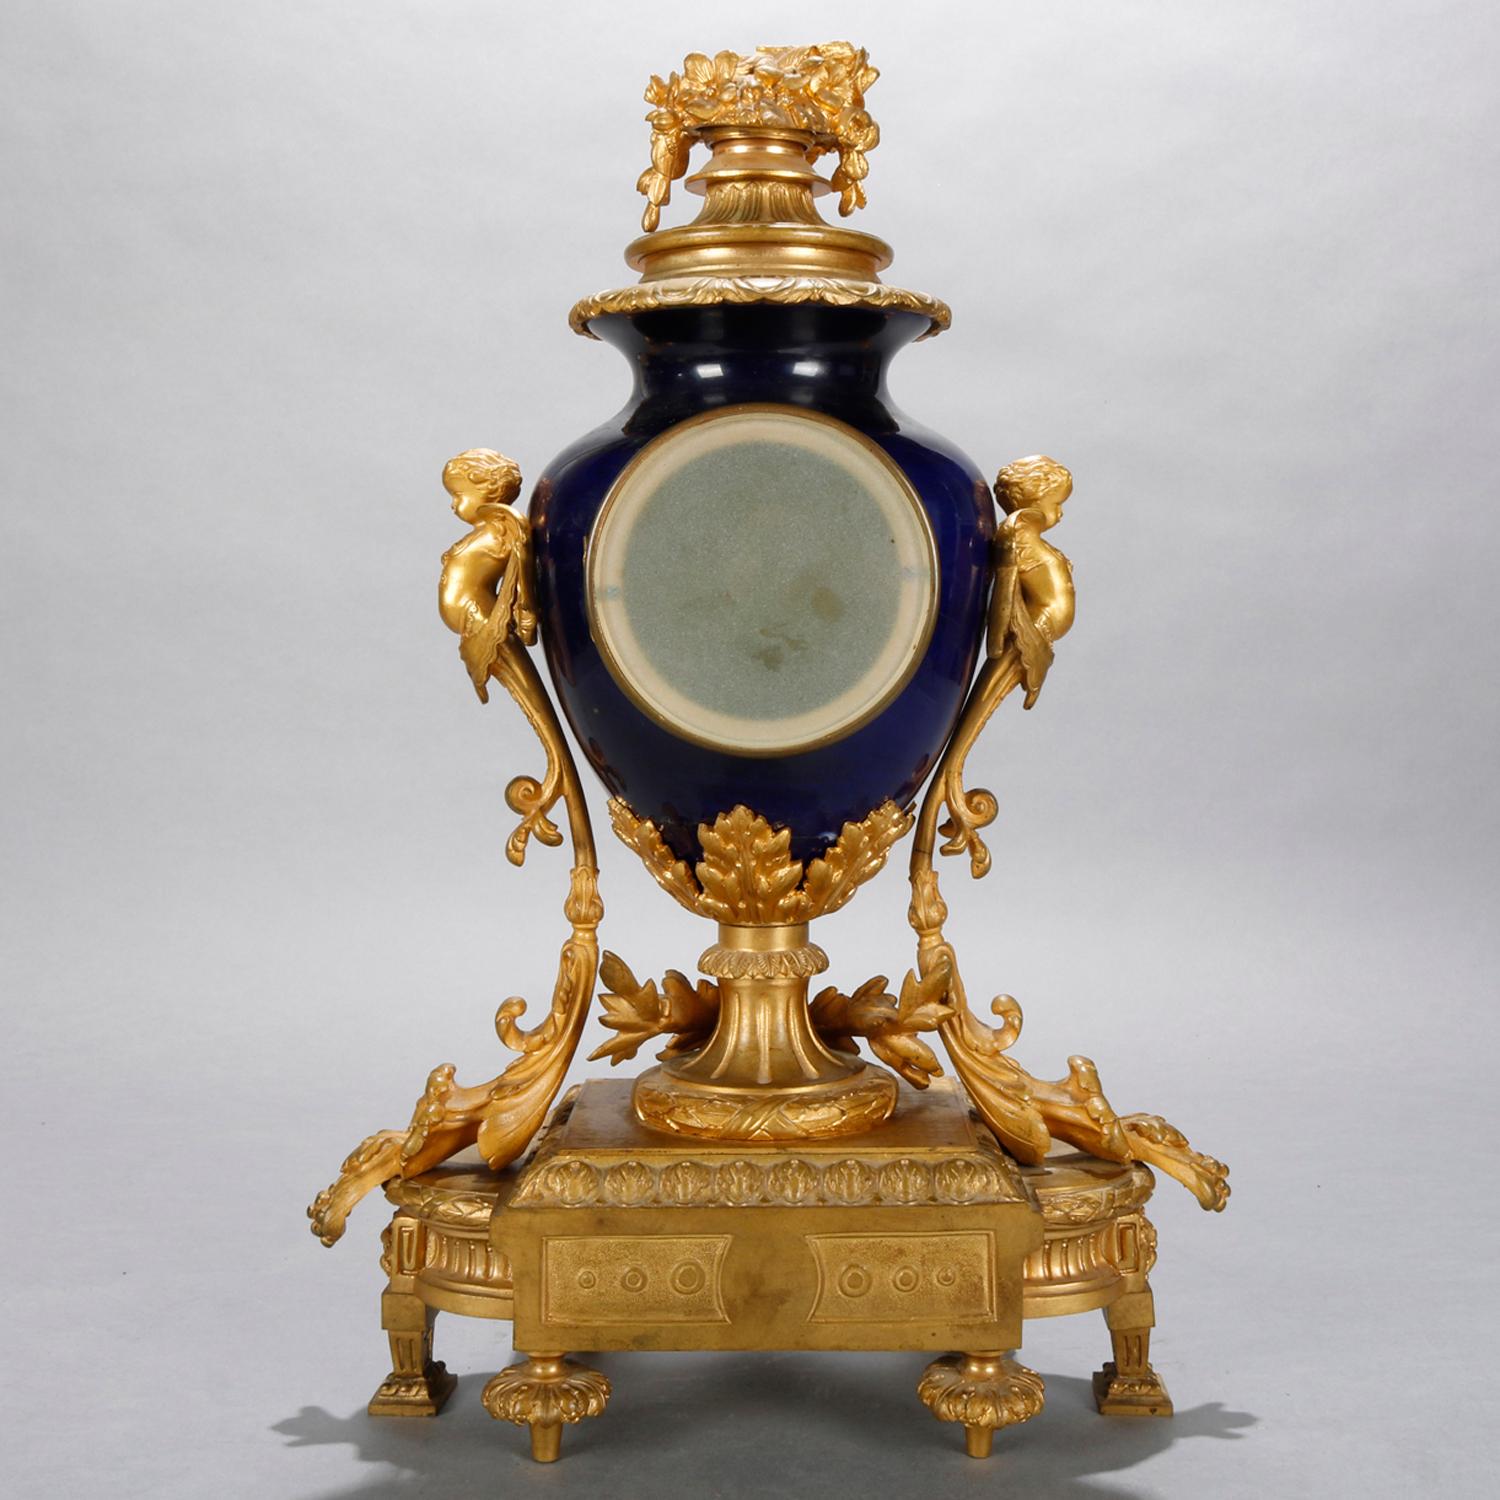 Cast Antique French Louis XIV Figural Gilt Bronze and Porcelain Mantle Clock